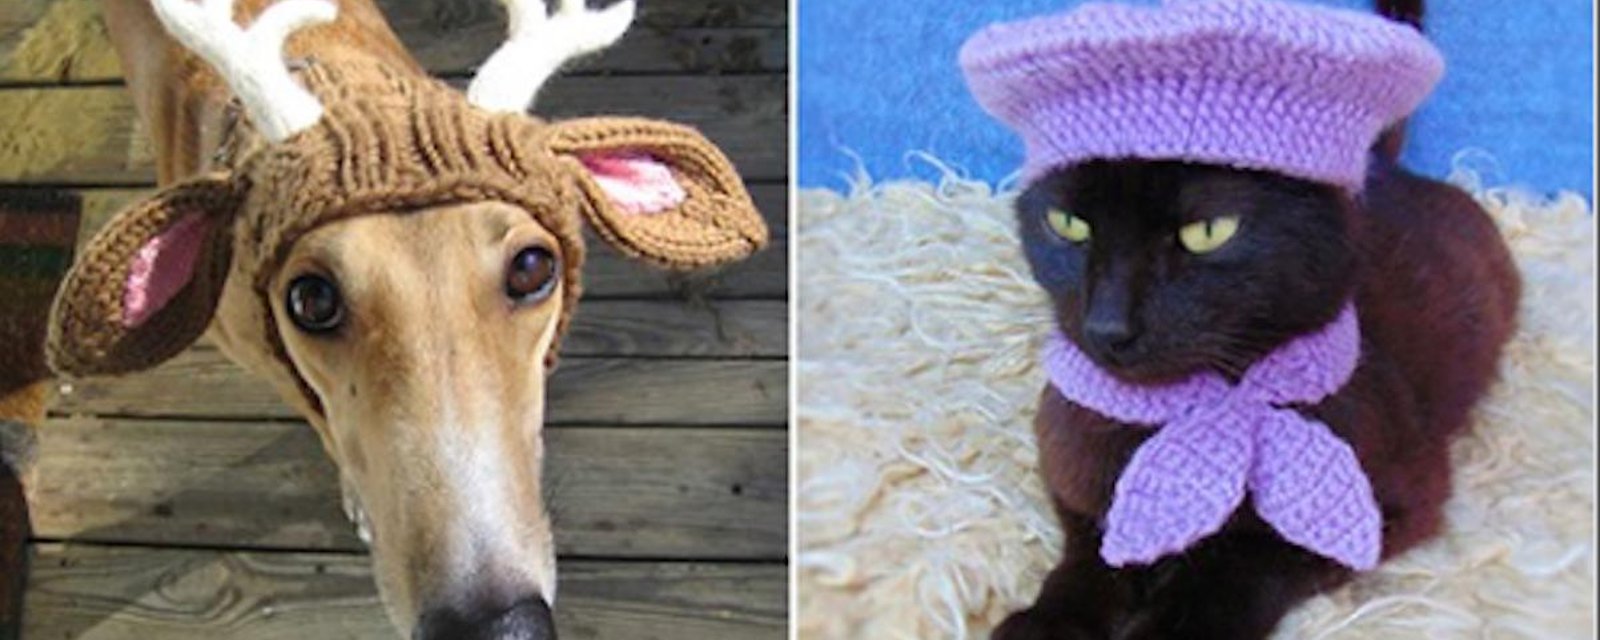 20 inspirations de chapeaux pour animaux réalisés au crochet